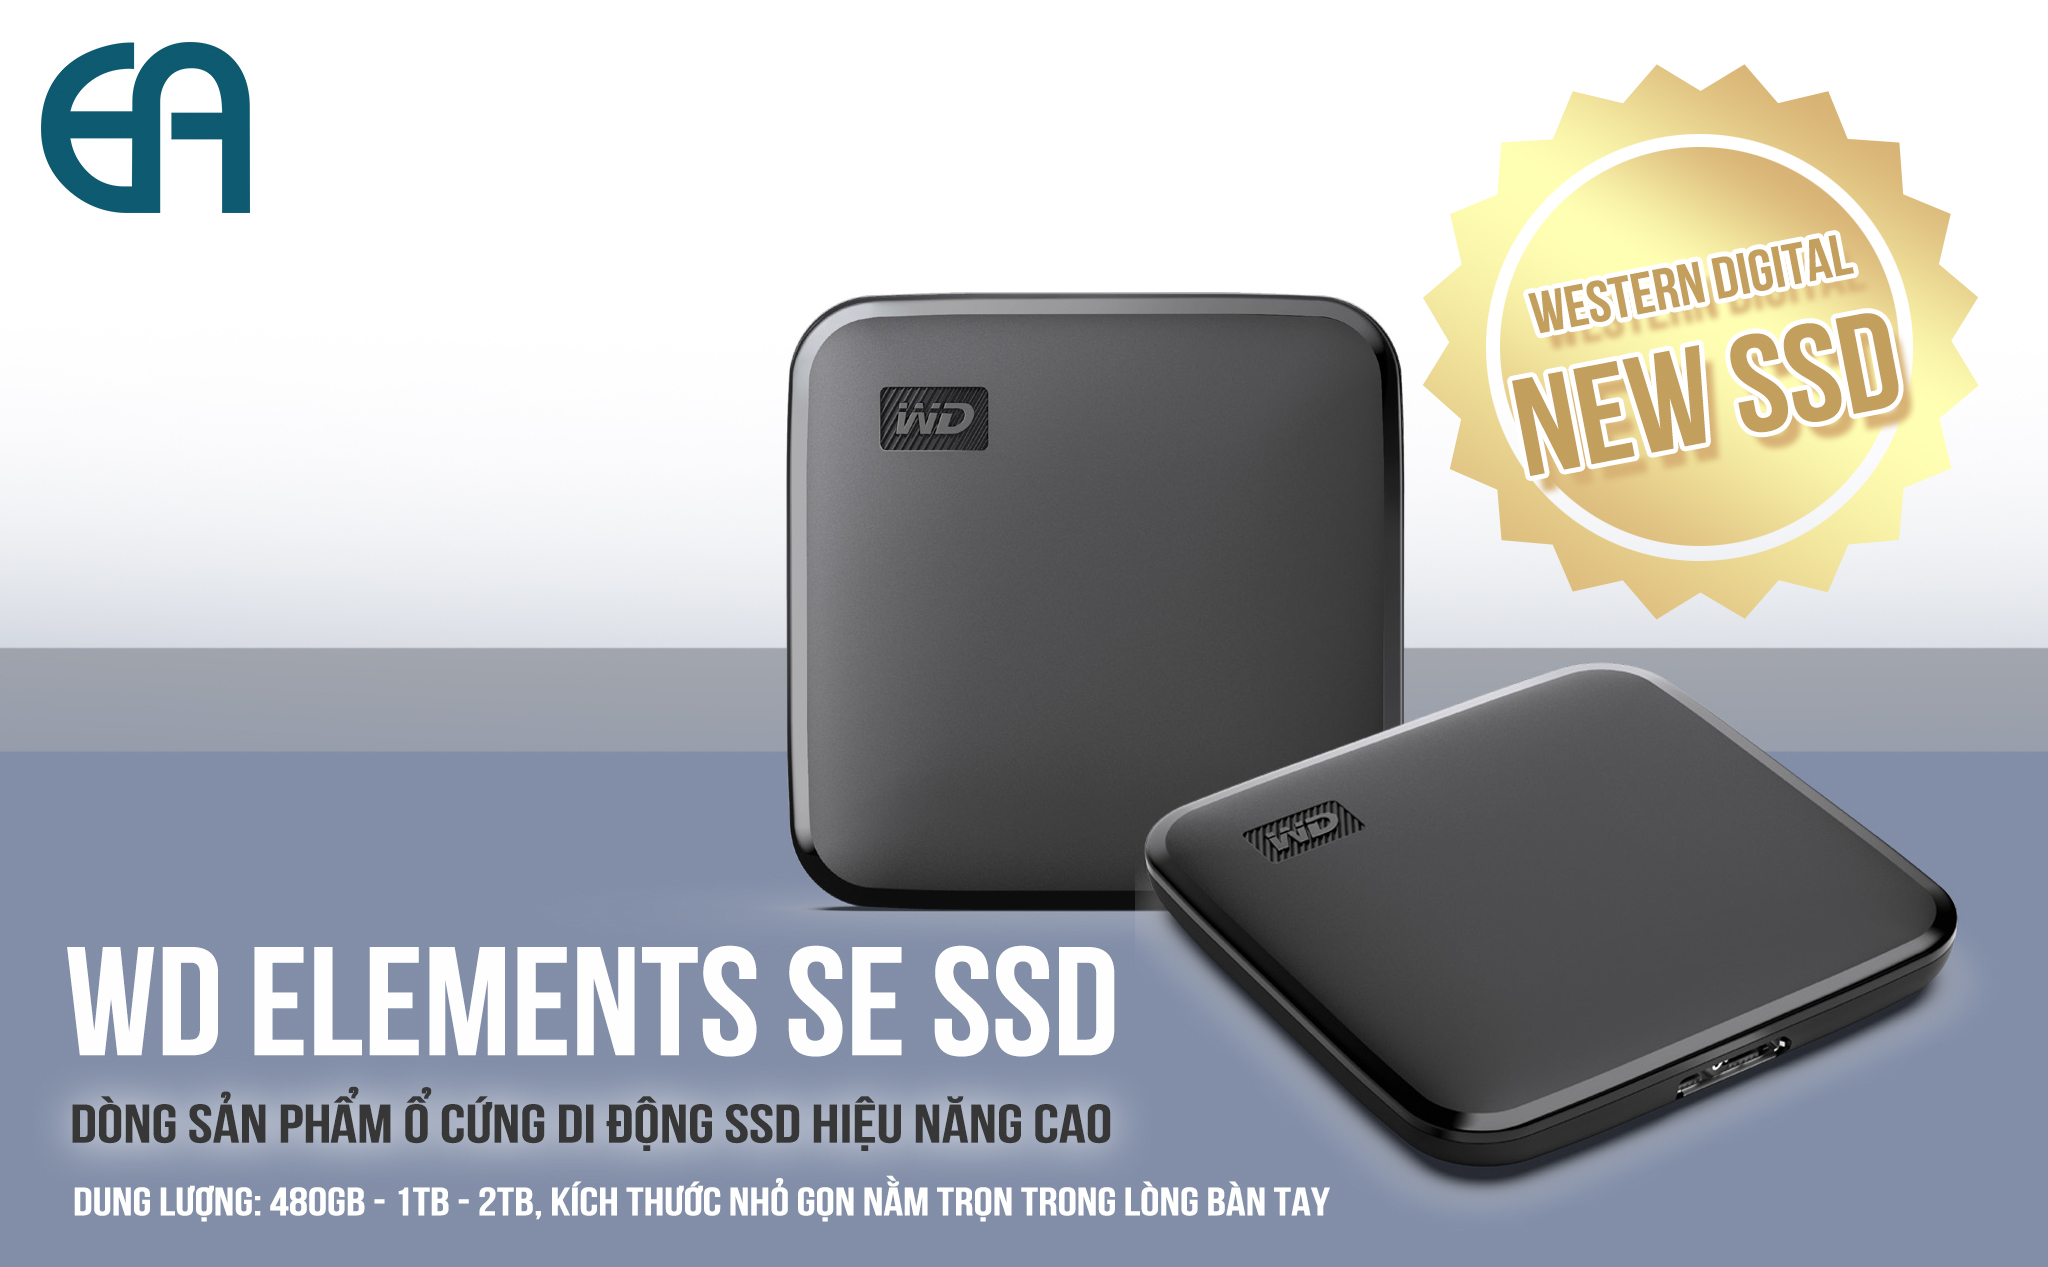 [QC] WD trình làng ổ cứng di động WD Elements SE SSD